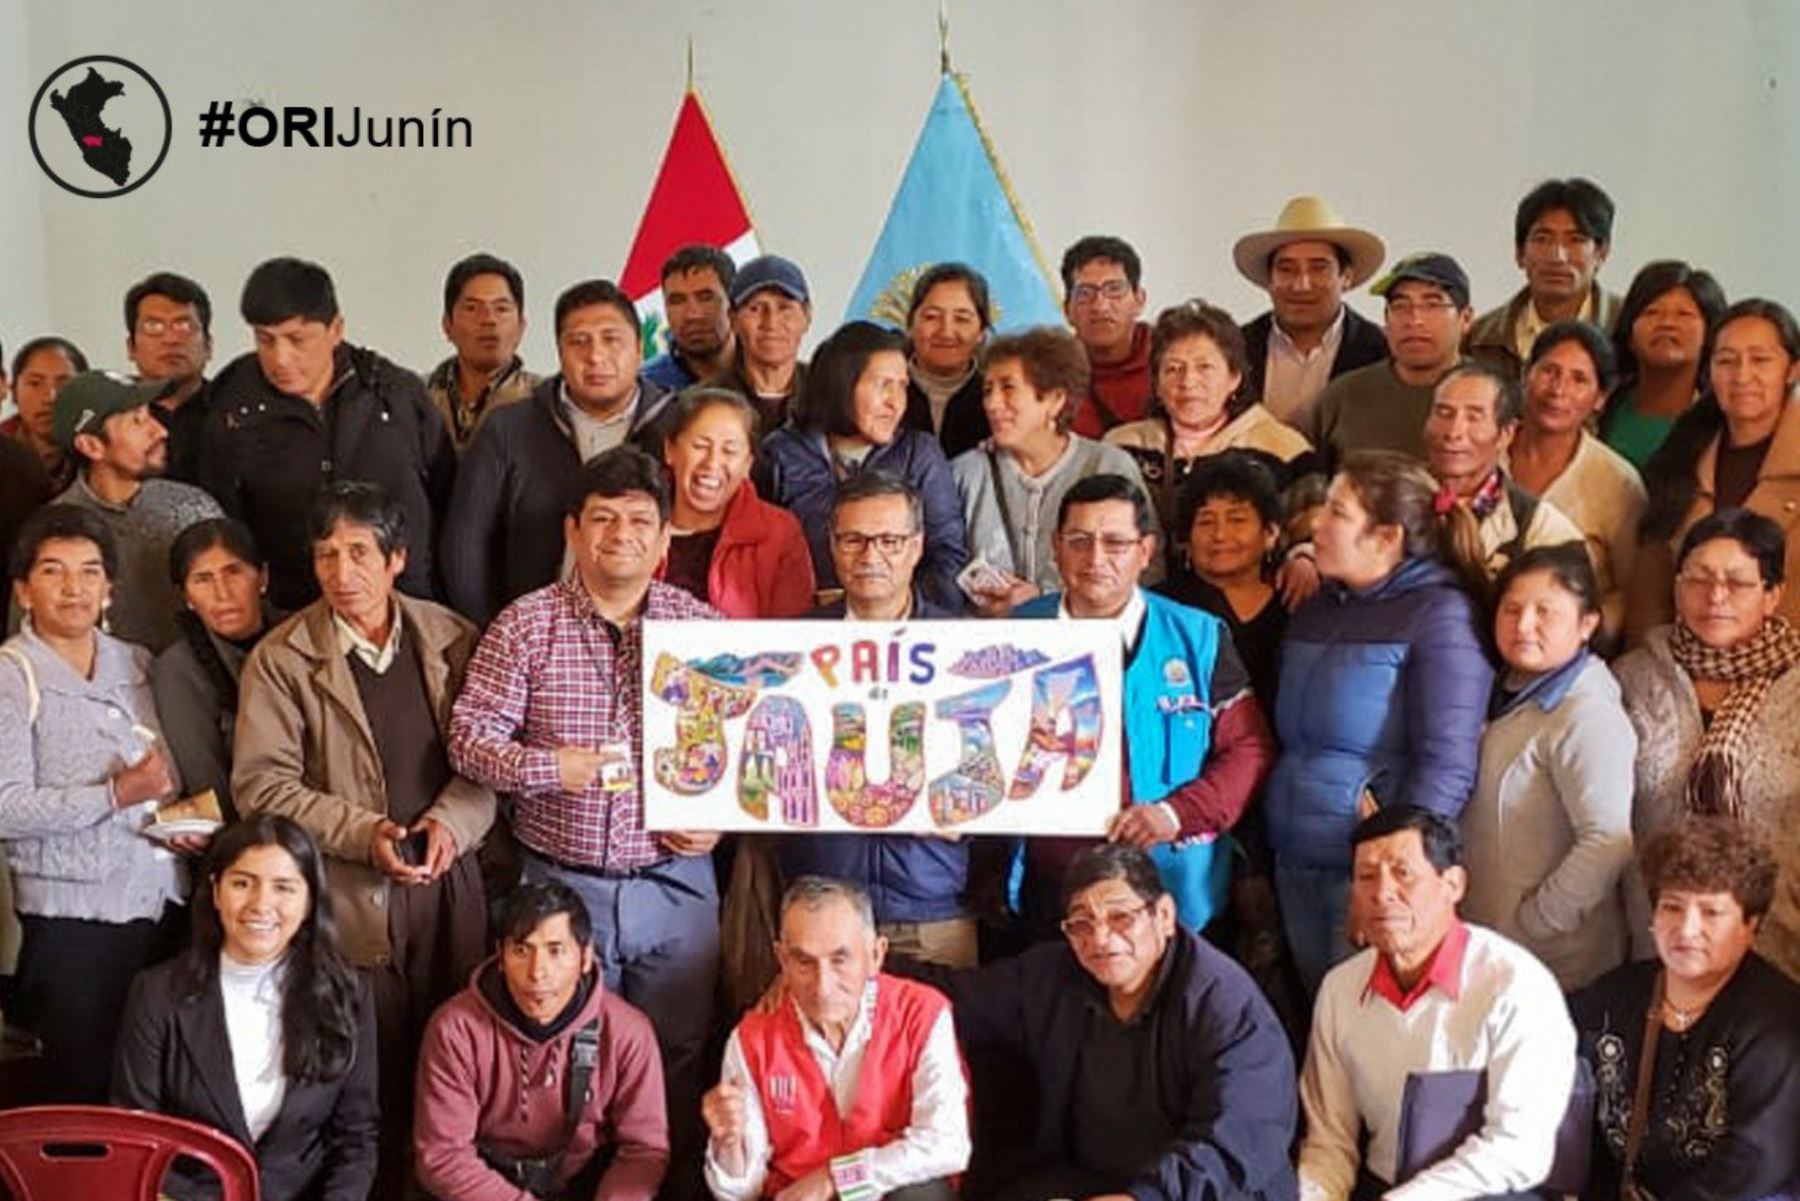 ndecopi capacita a productores de Jauja y Huancayo sobre beneficios de marcas colectivas